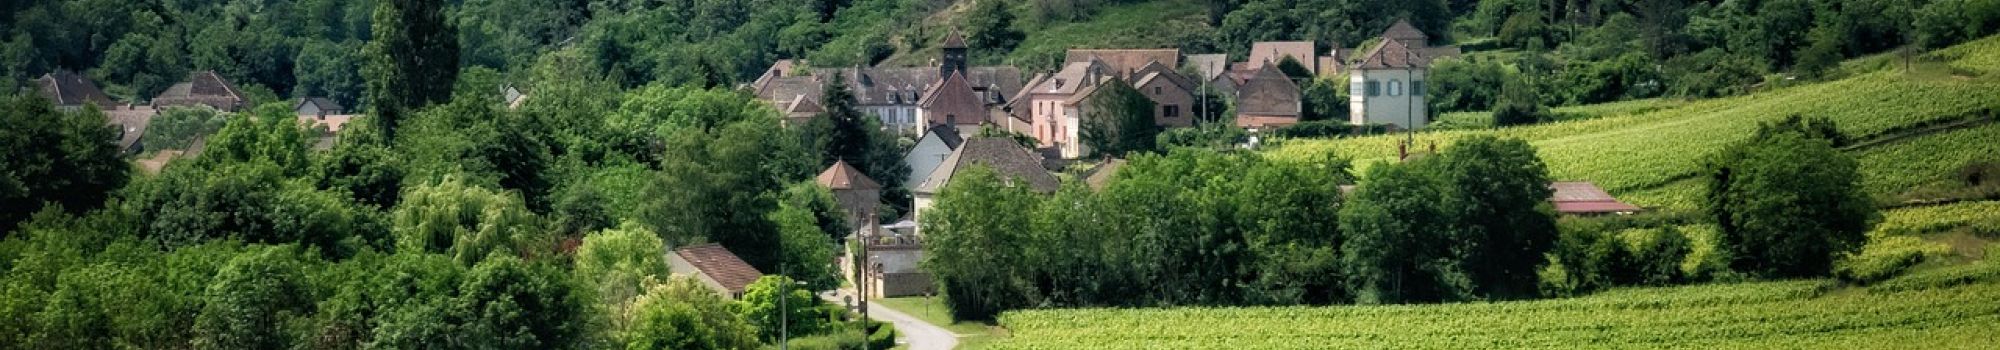 Randonnée « Charme et terroir de Bourgogne » (3 jours/2 nuits)